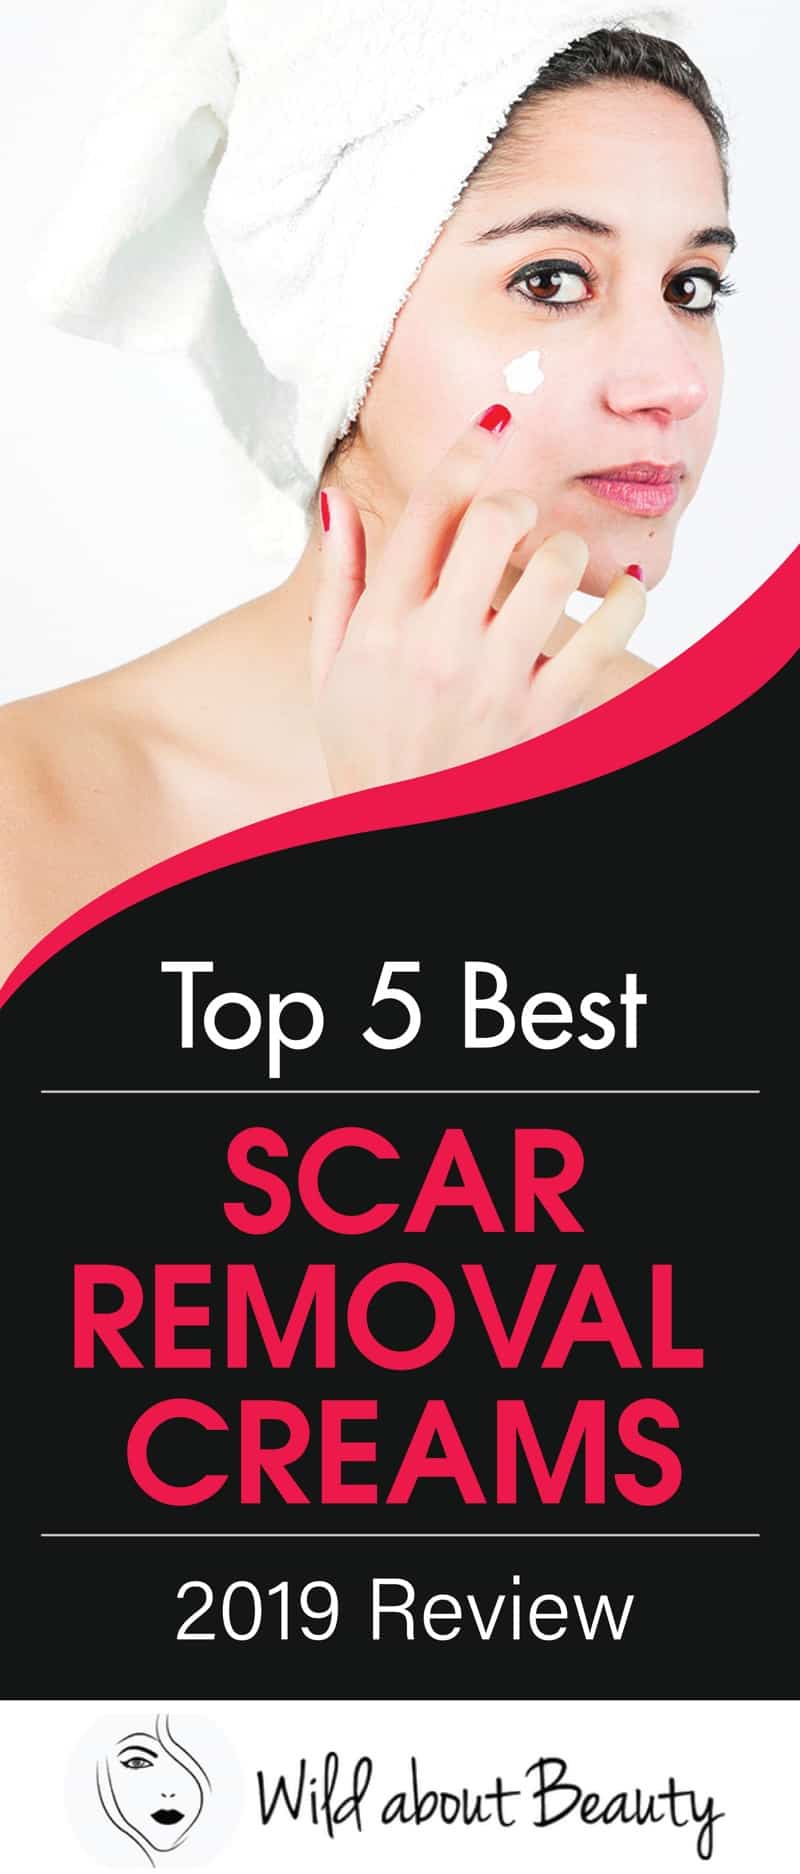 Top 5 Best Scar Removal Creams